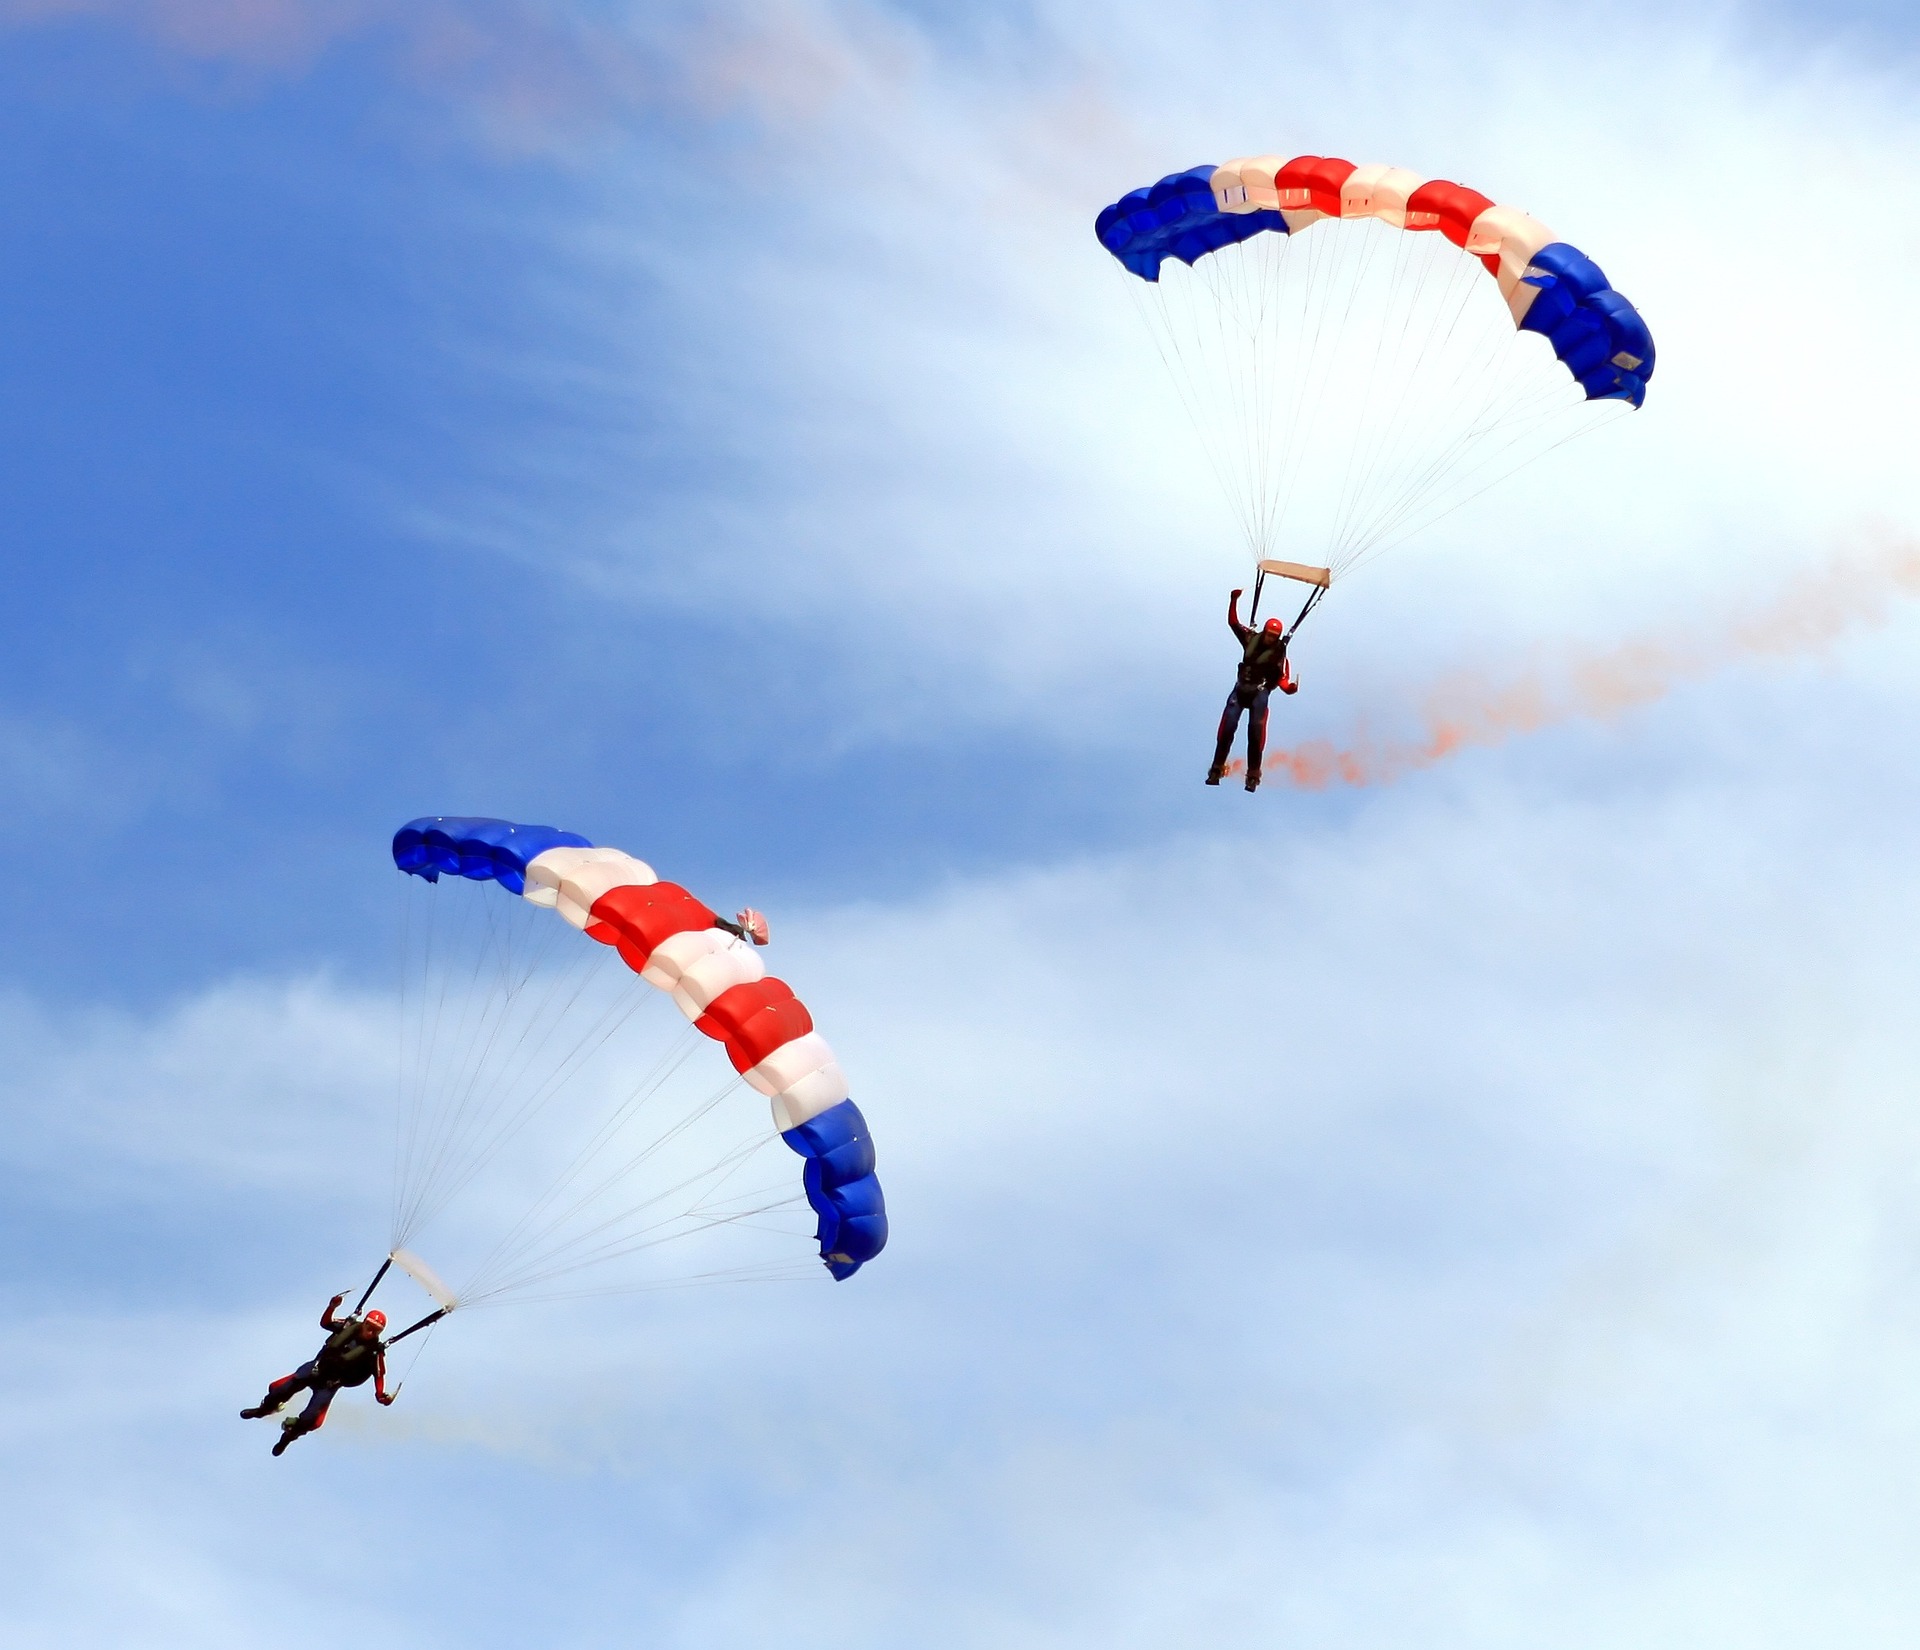 Skok spadochronowy w tandemie – co warto wiedzieć przed skokiem?